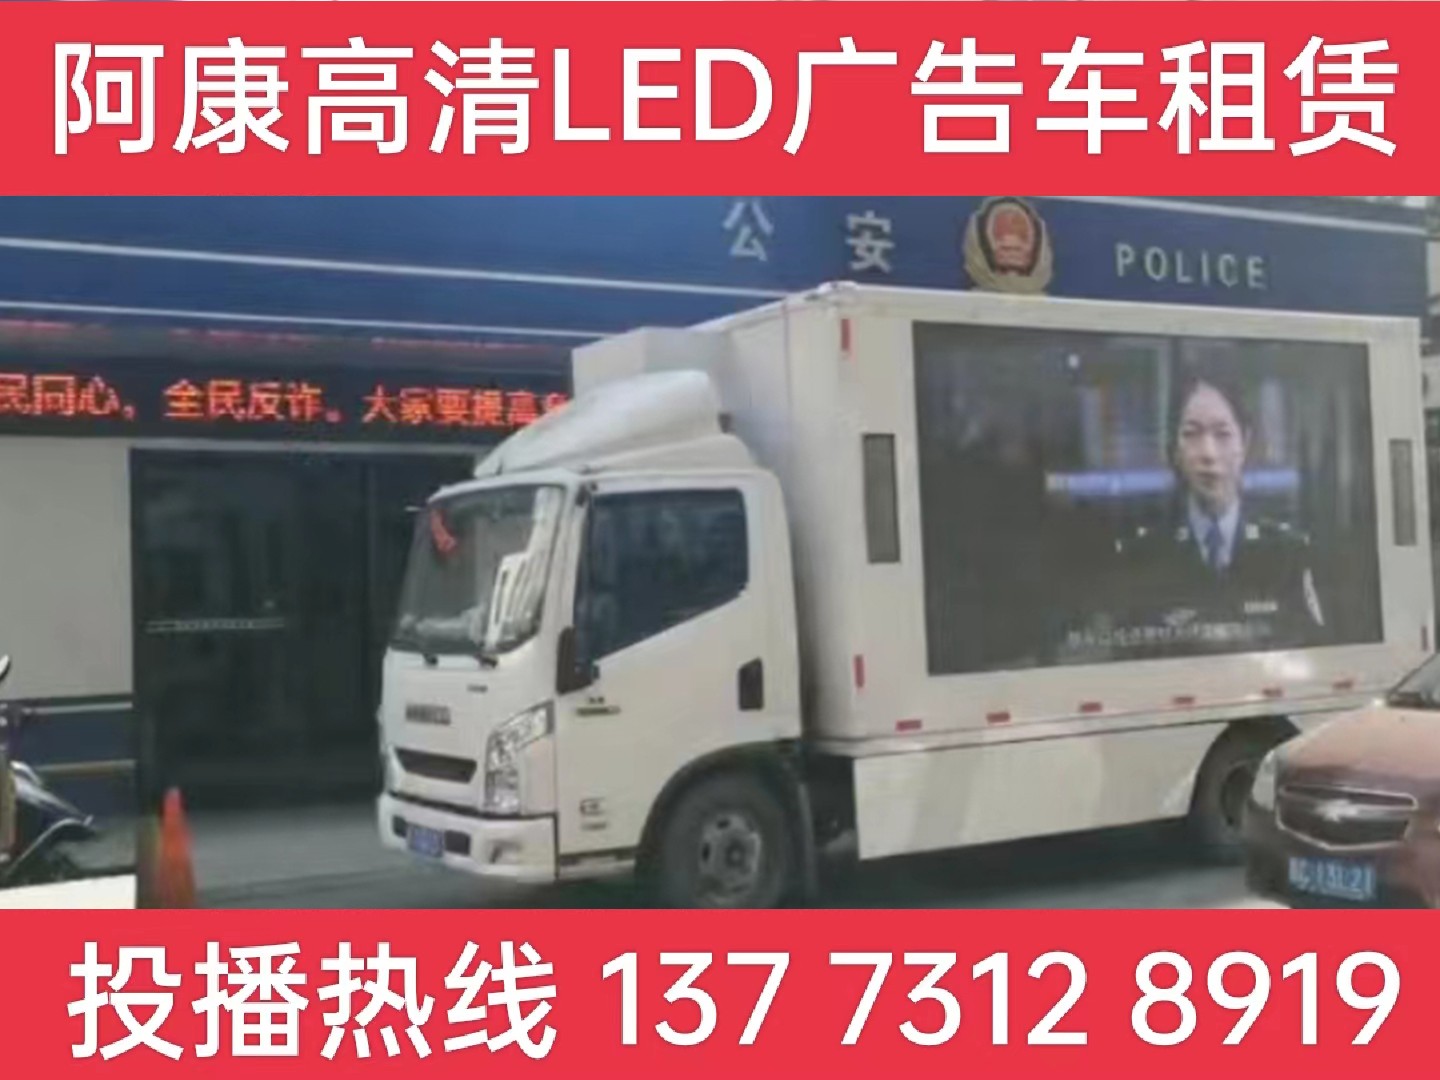 德清县LED广告车租赁-反诈宣传